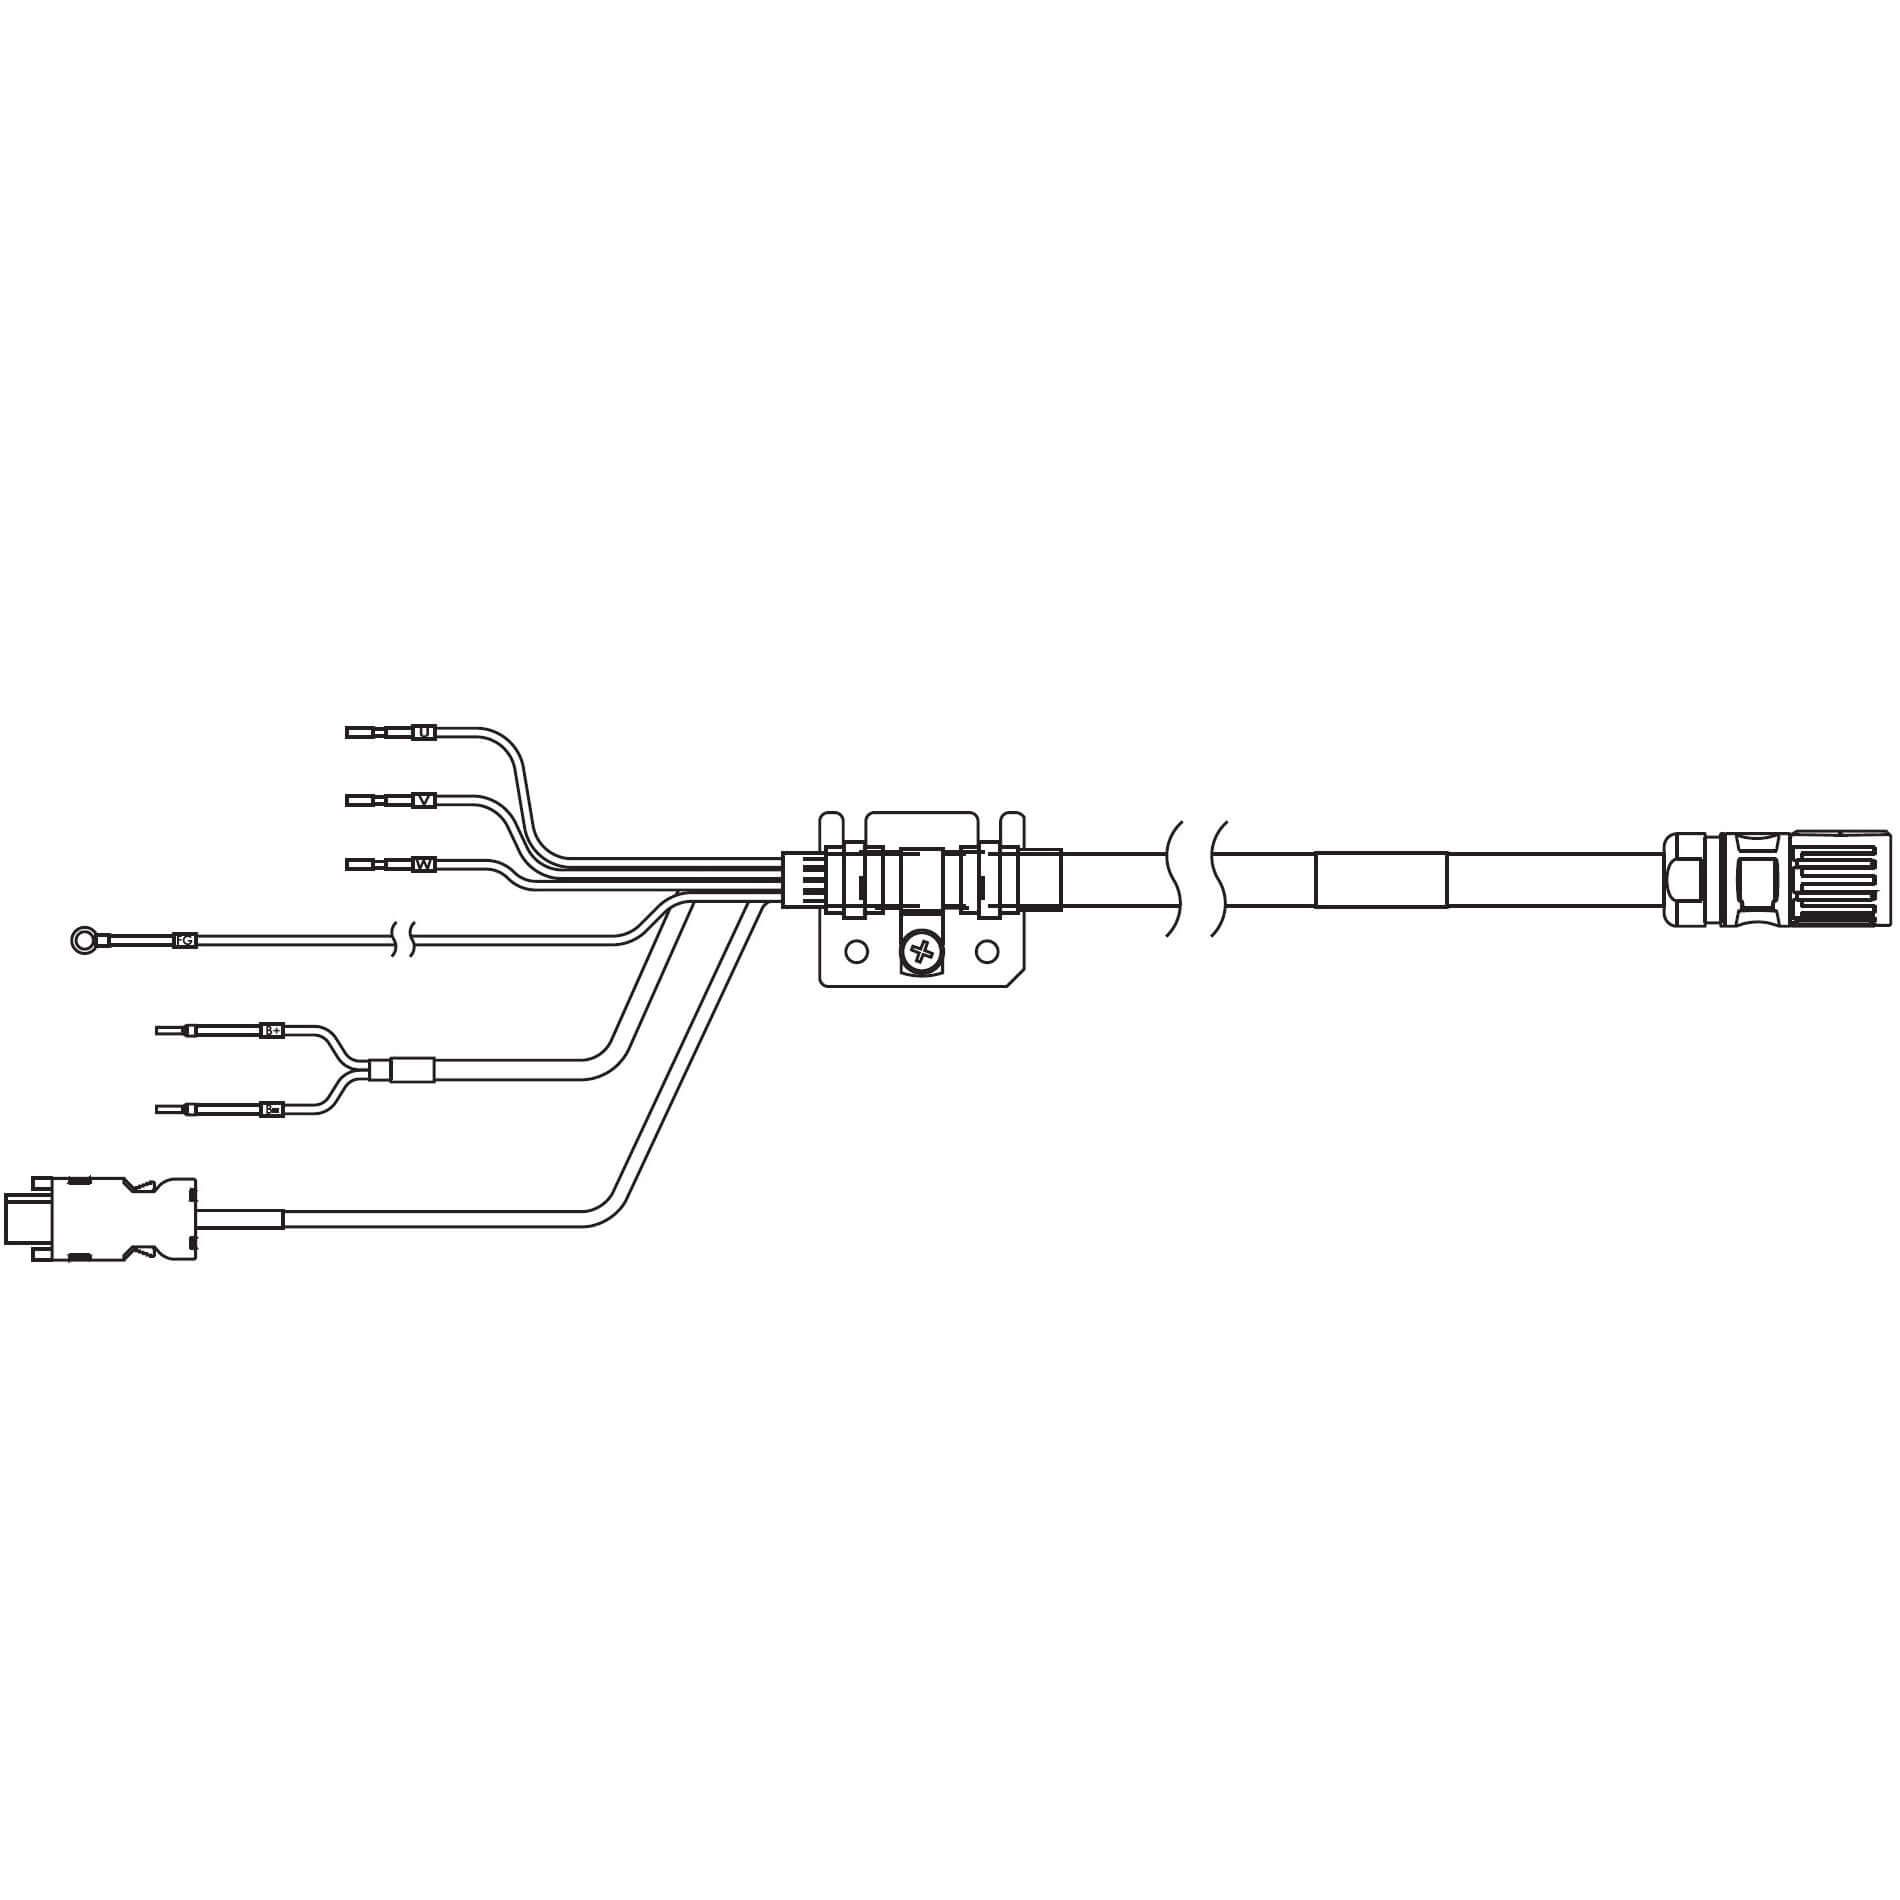 1S-Servomotor mit Safe Motion, Integrierte Kabel R88A-CX1A020BF